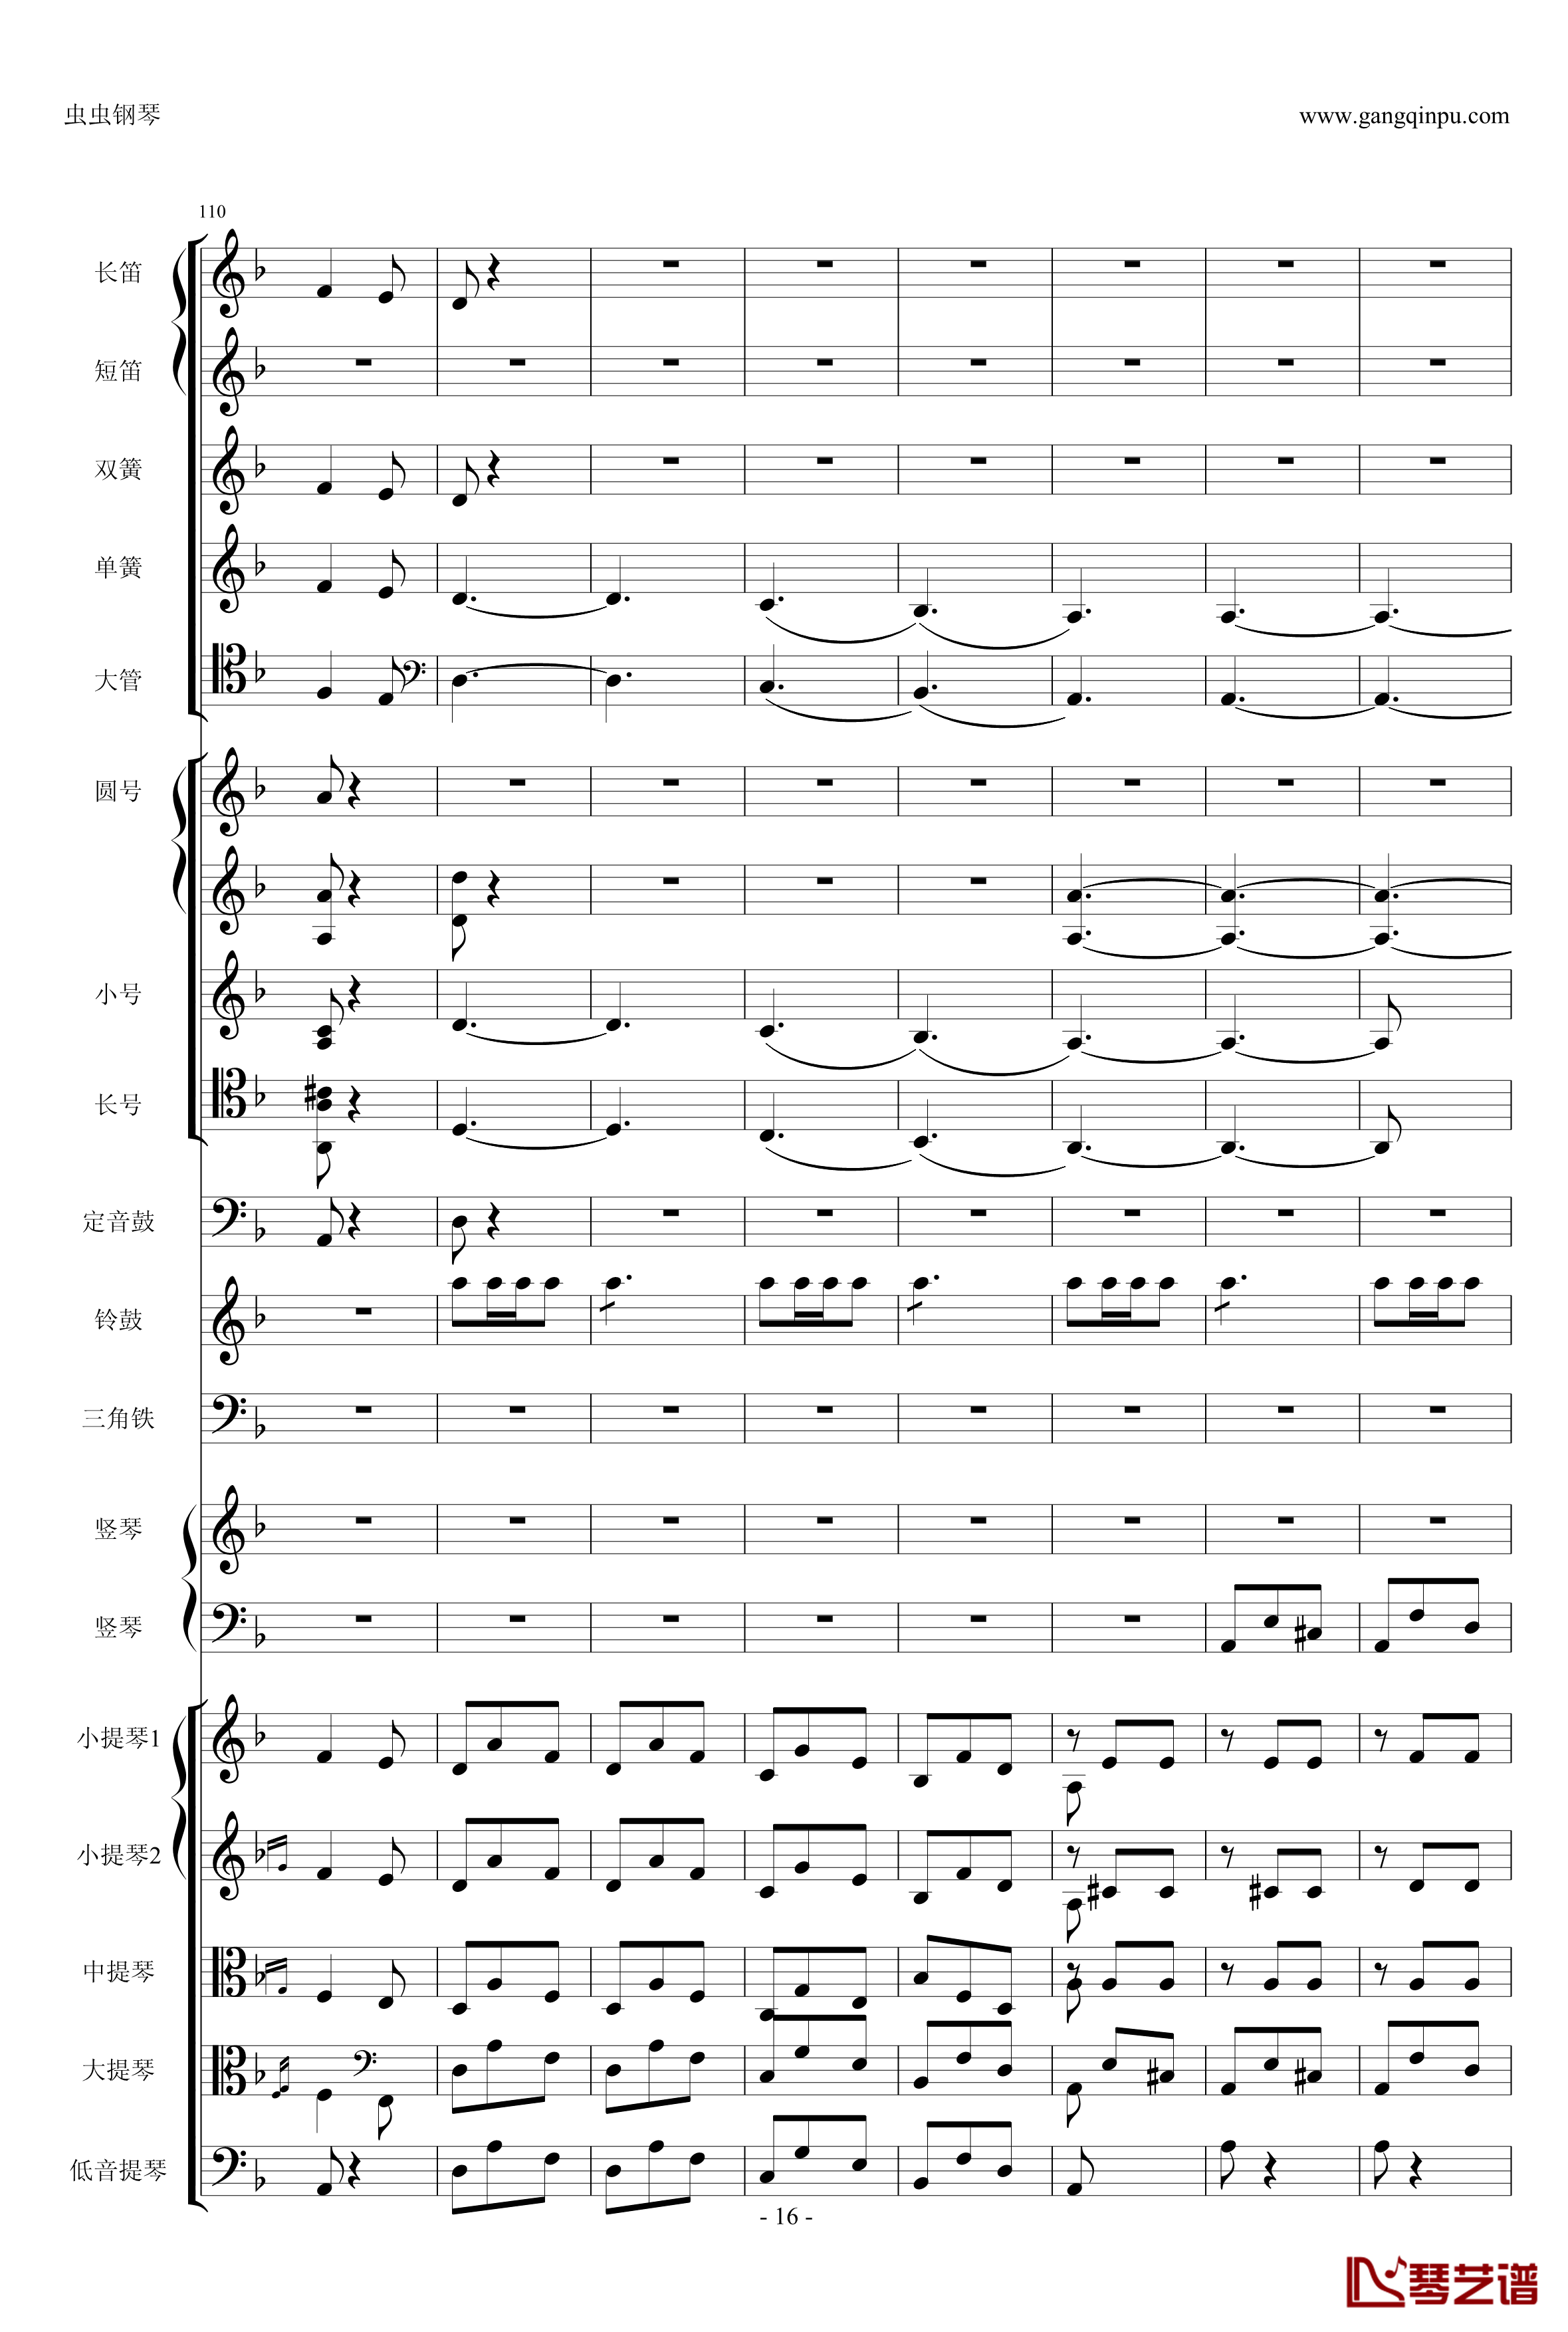 歌剧卡门选段钢琴谱-比才-Bizet- 第四幕间奏曲16